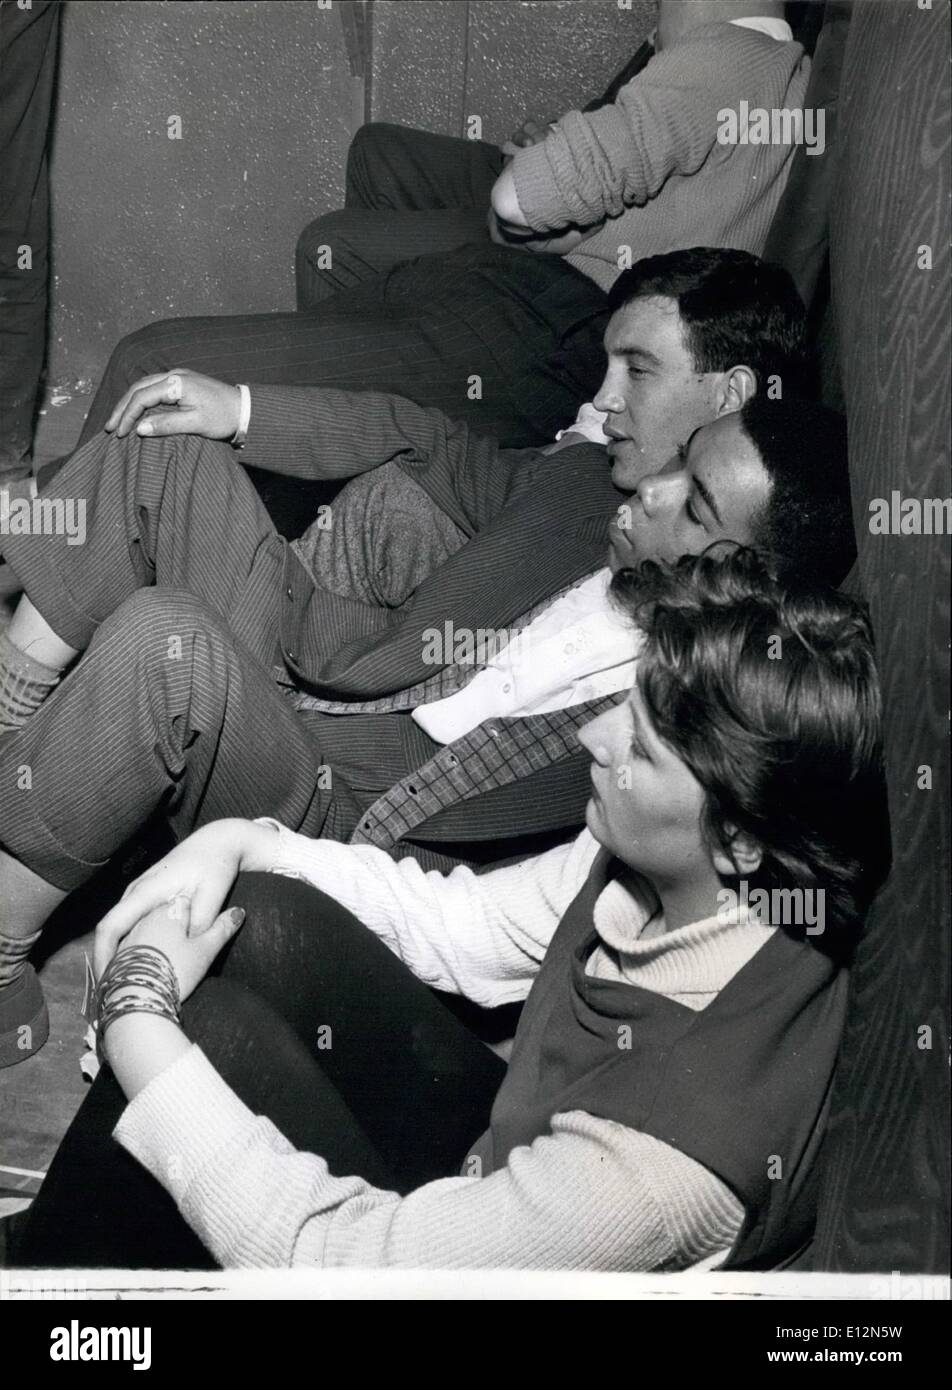 Febbraio 24, 2012 - relax presso la CY Laurie Club: alcuni dei partner maschi poggiano sul pavimento come tutta la notte della sessione jazz indossa Foto Stock